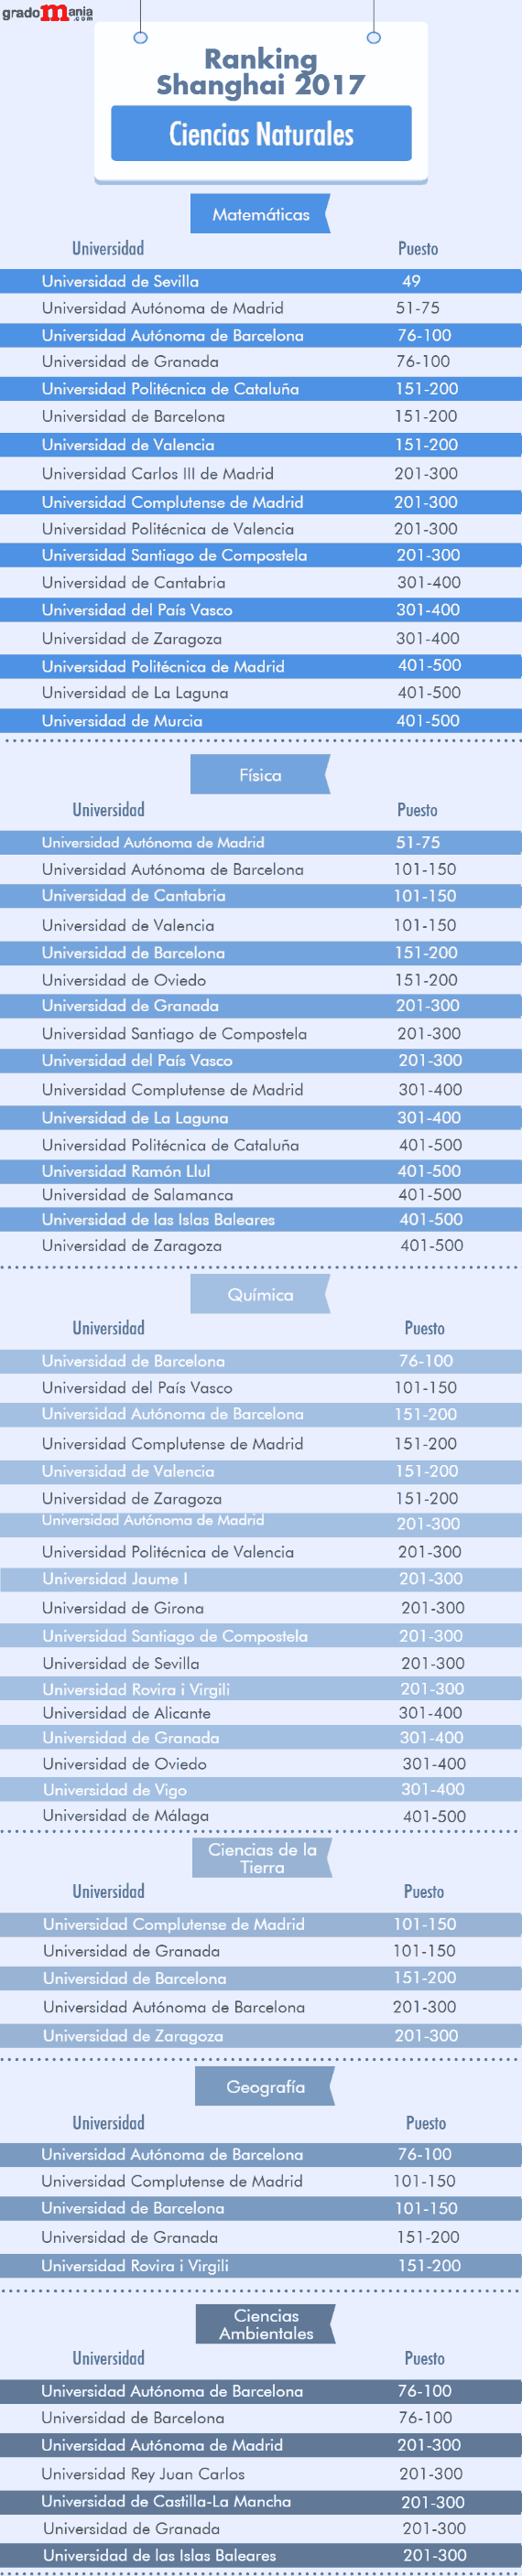 Ranking de universidades españolas según area de conocimiento noticiaAMP